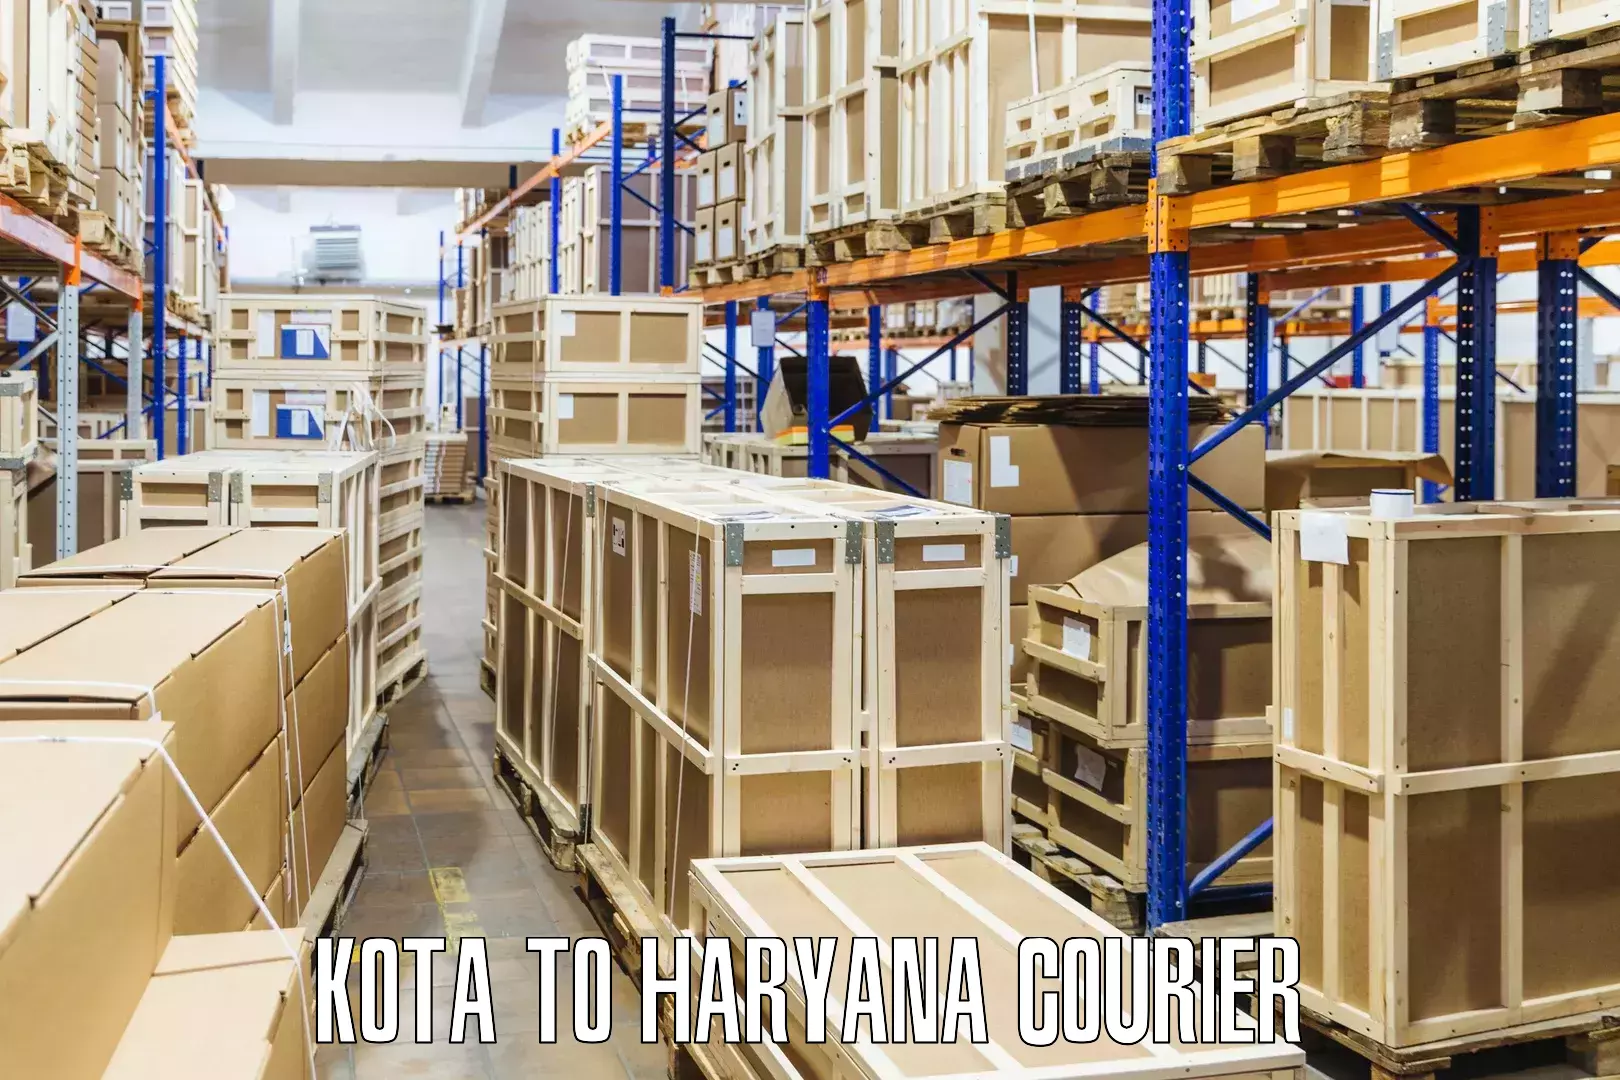 Urgent courier needs Kota to Narwana